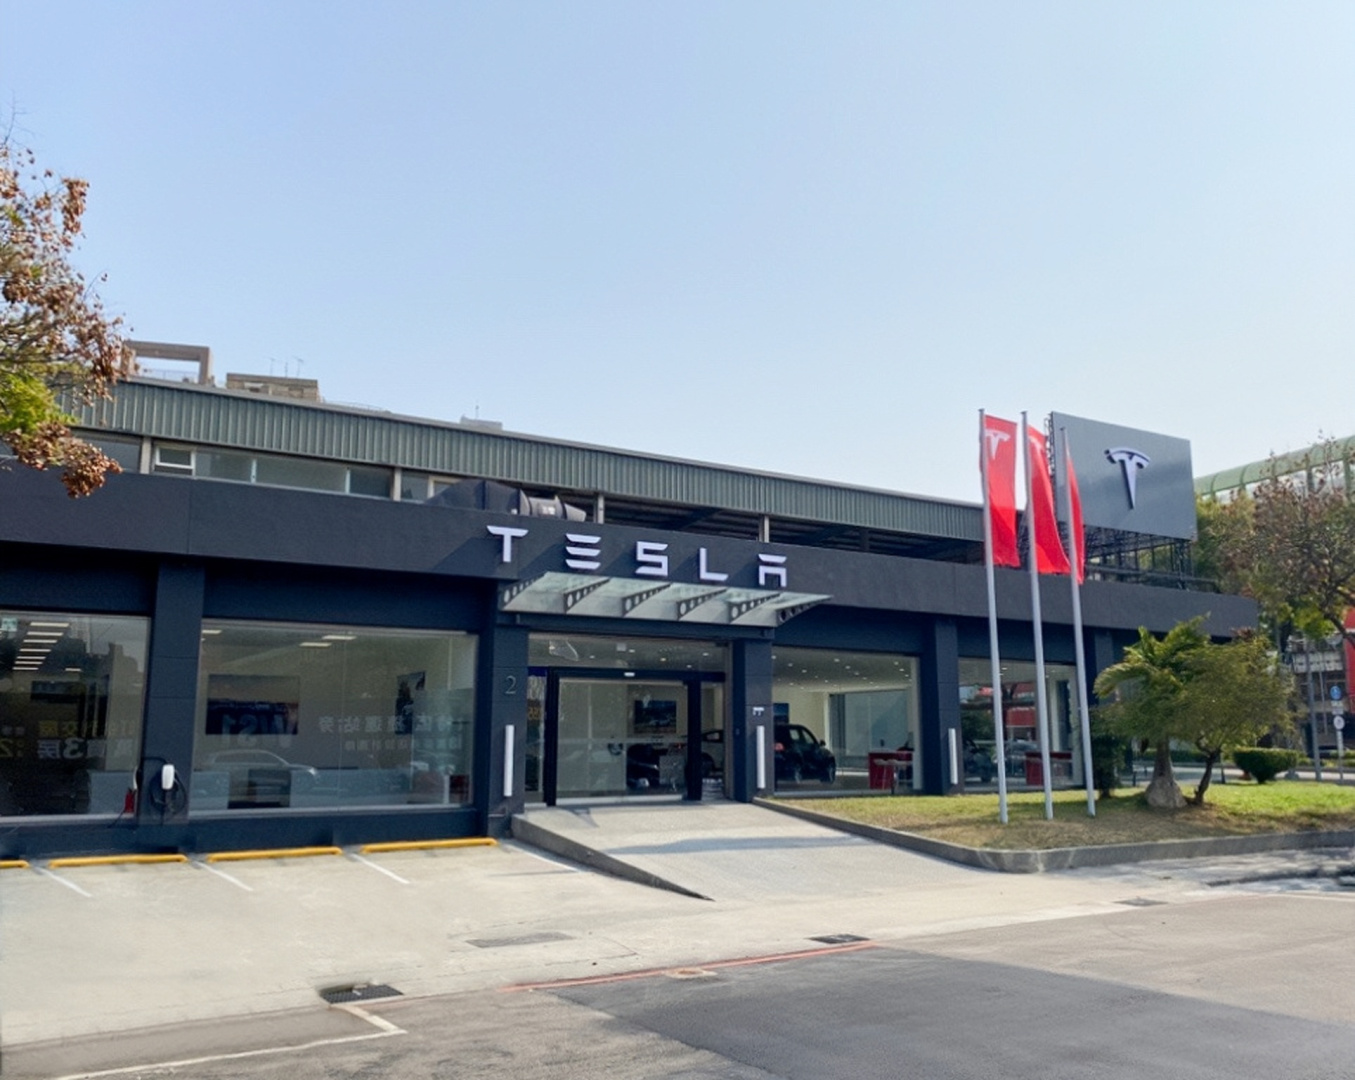 SMALL_Tesla Center 台中青海服務體驗中心將提供中部消費者與車主從銷售、體驗到保養維修的全方位服務